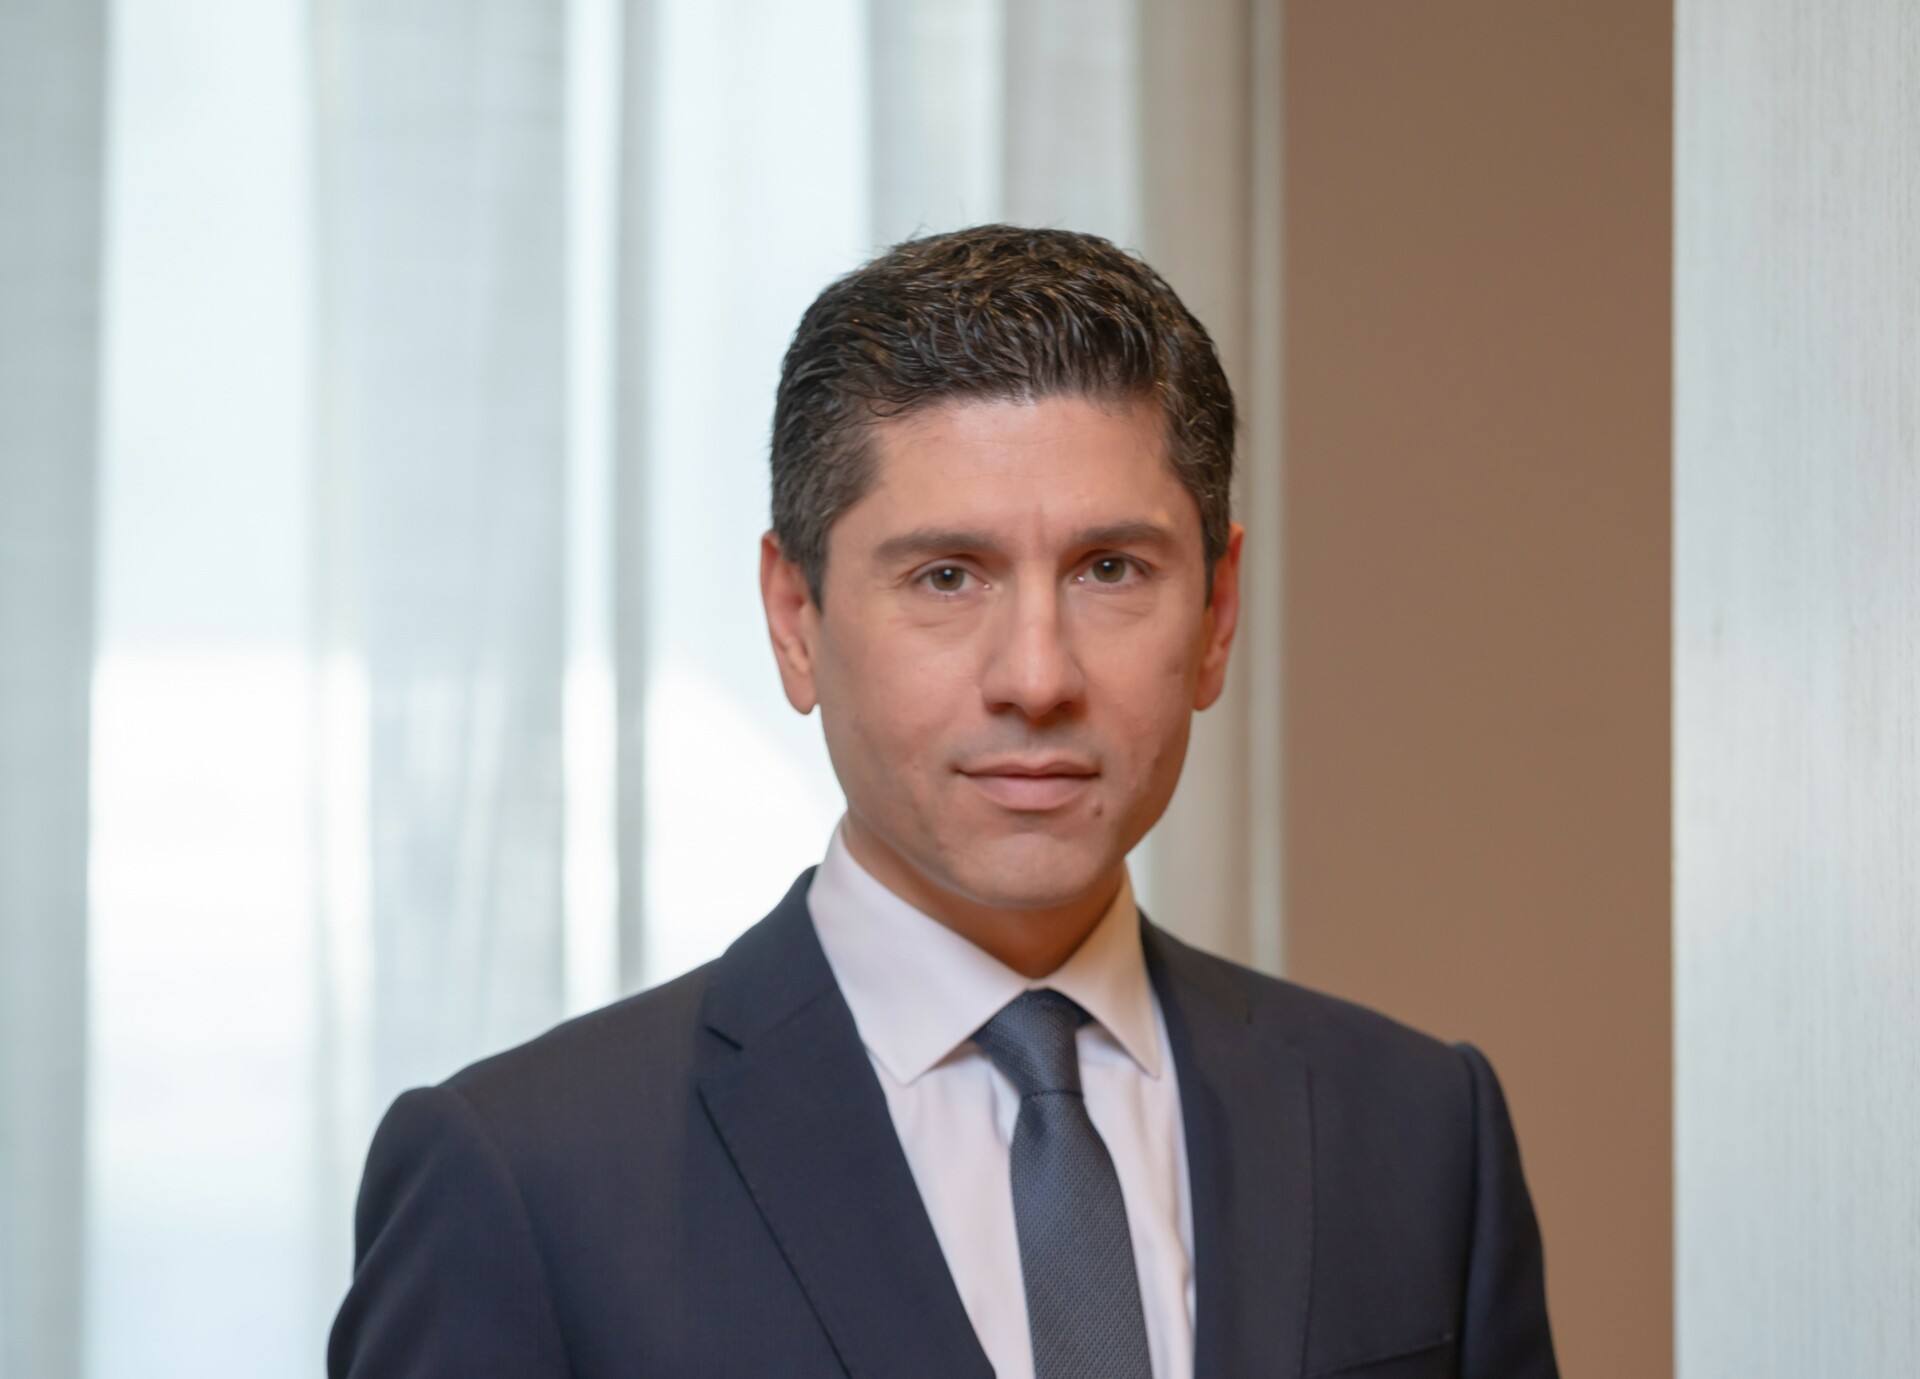 Ο Τάσος Αναστασάτος είναι επικεφαλής οικονομολόγος του ομίλου της Eurobank και πρόεδρος της Συντονιστικής Επιτροπής Οικονομικής Ανάλυσης της ΕΕΤ, tanastasatos@eurobank.gr